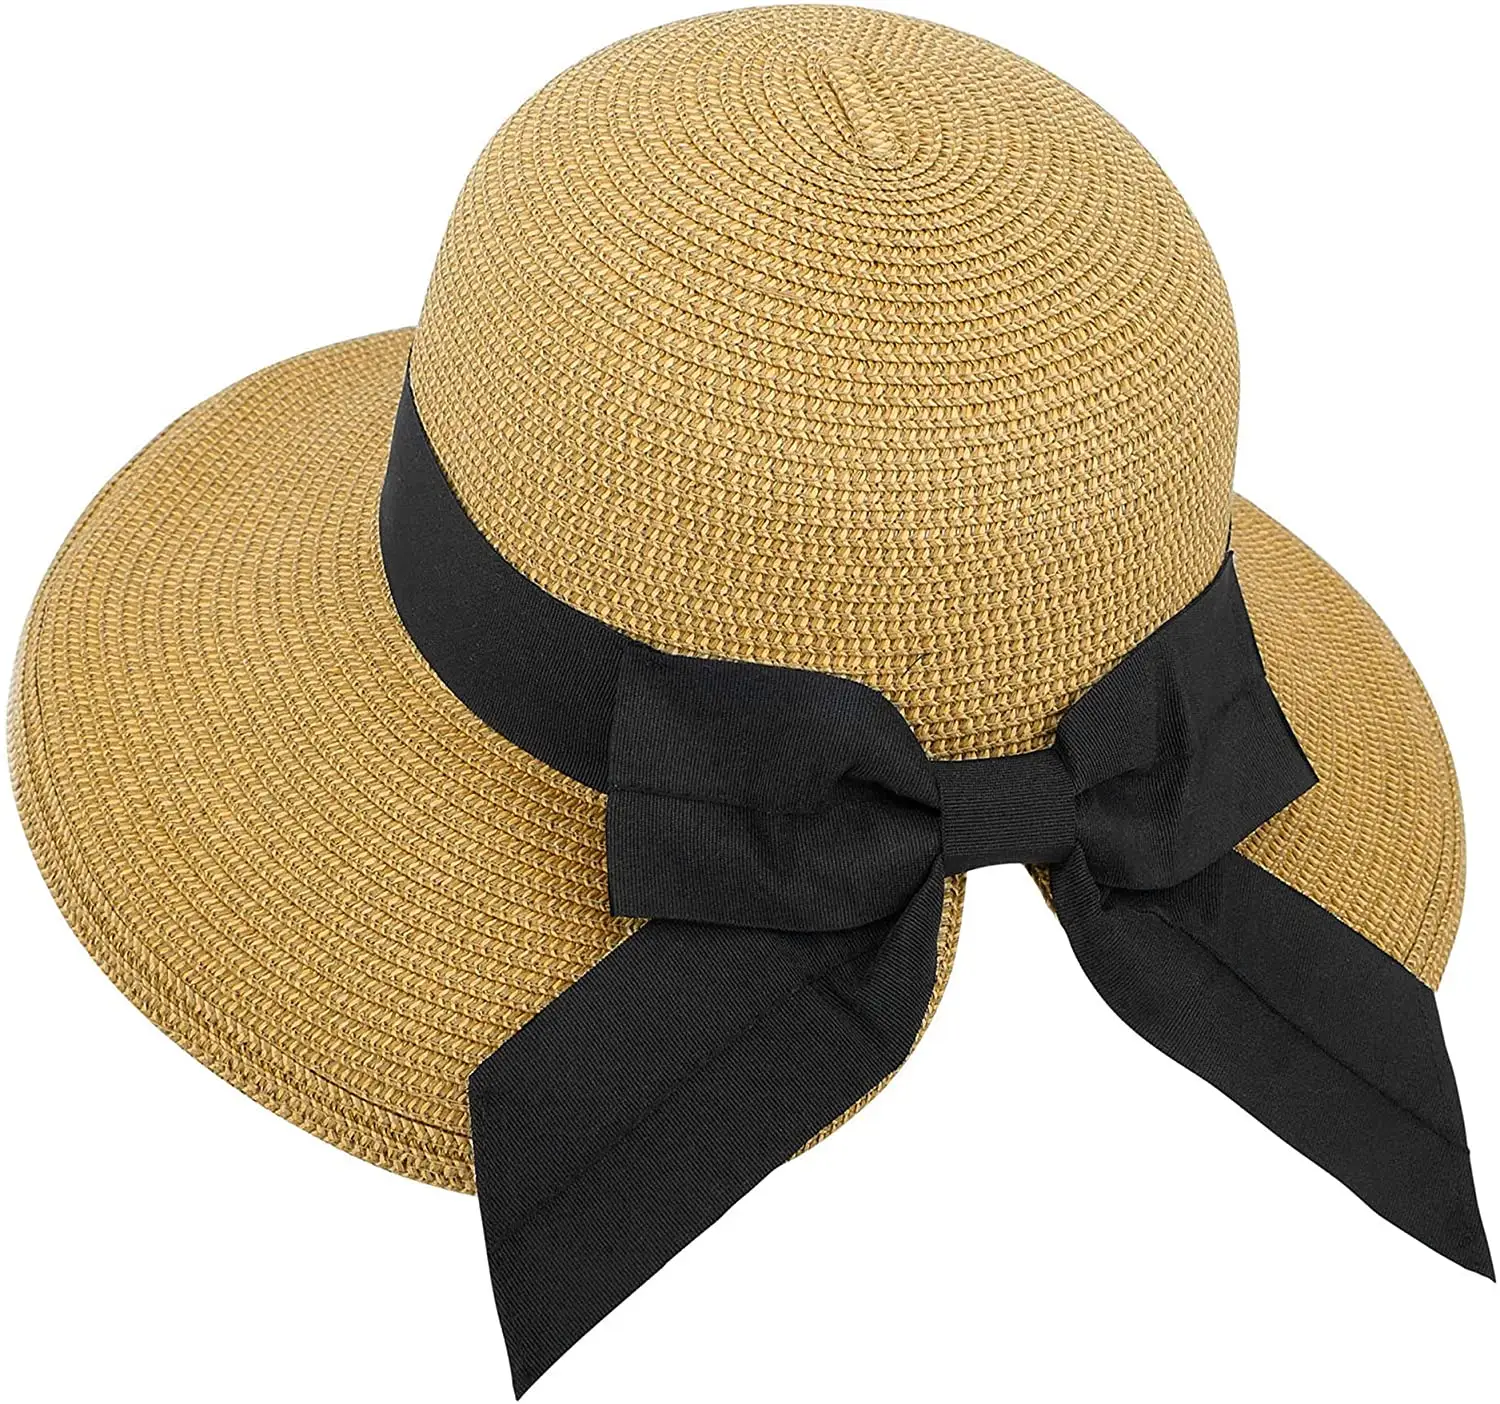 महिलाओं के लिए सूर्य टोपी 50 + महिलाओं के हल्के फोल्डेबल/पैक करने योग्य समुद्र तट